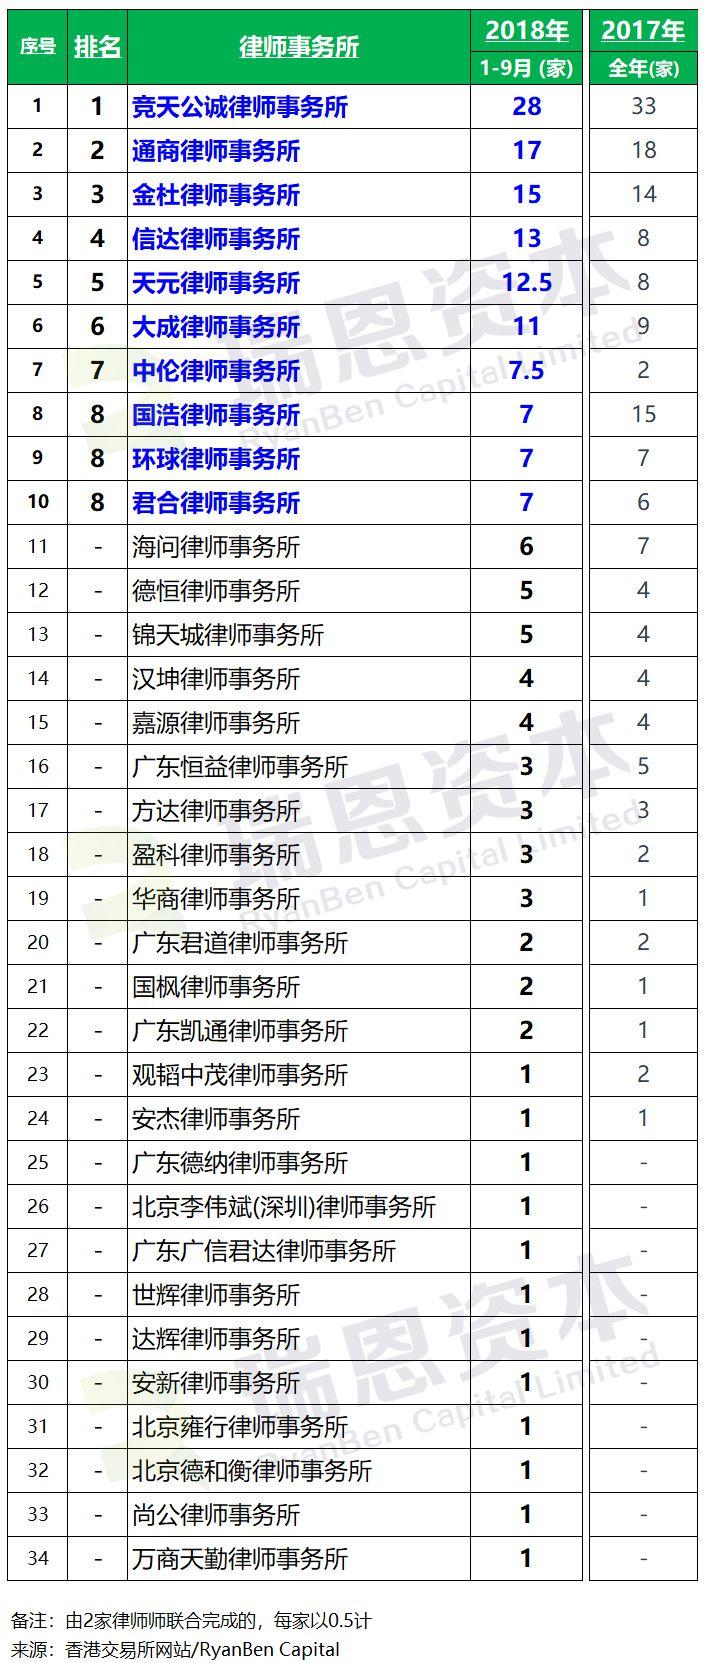 香港IPO上市中介团队排行榜 (2018年前三季)